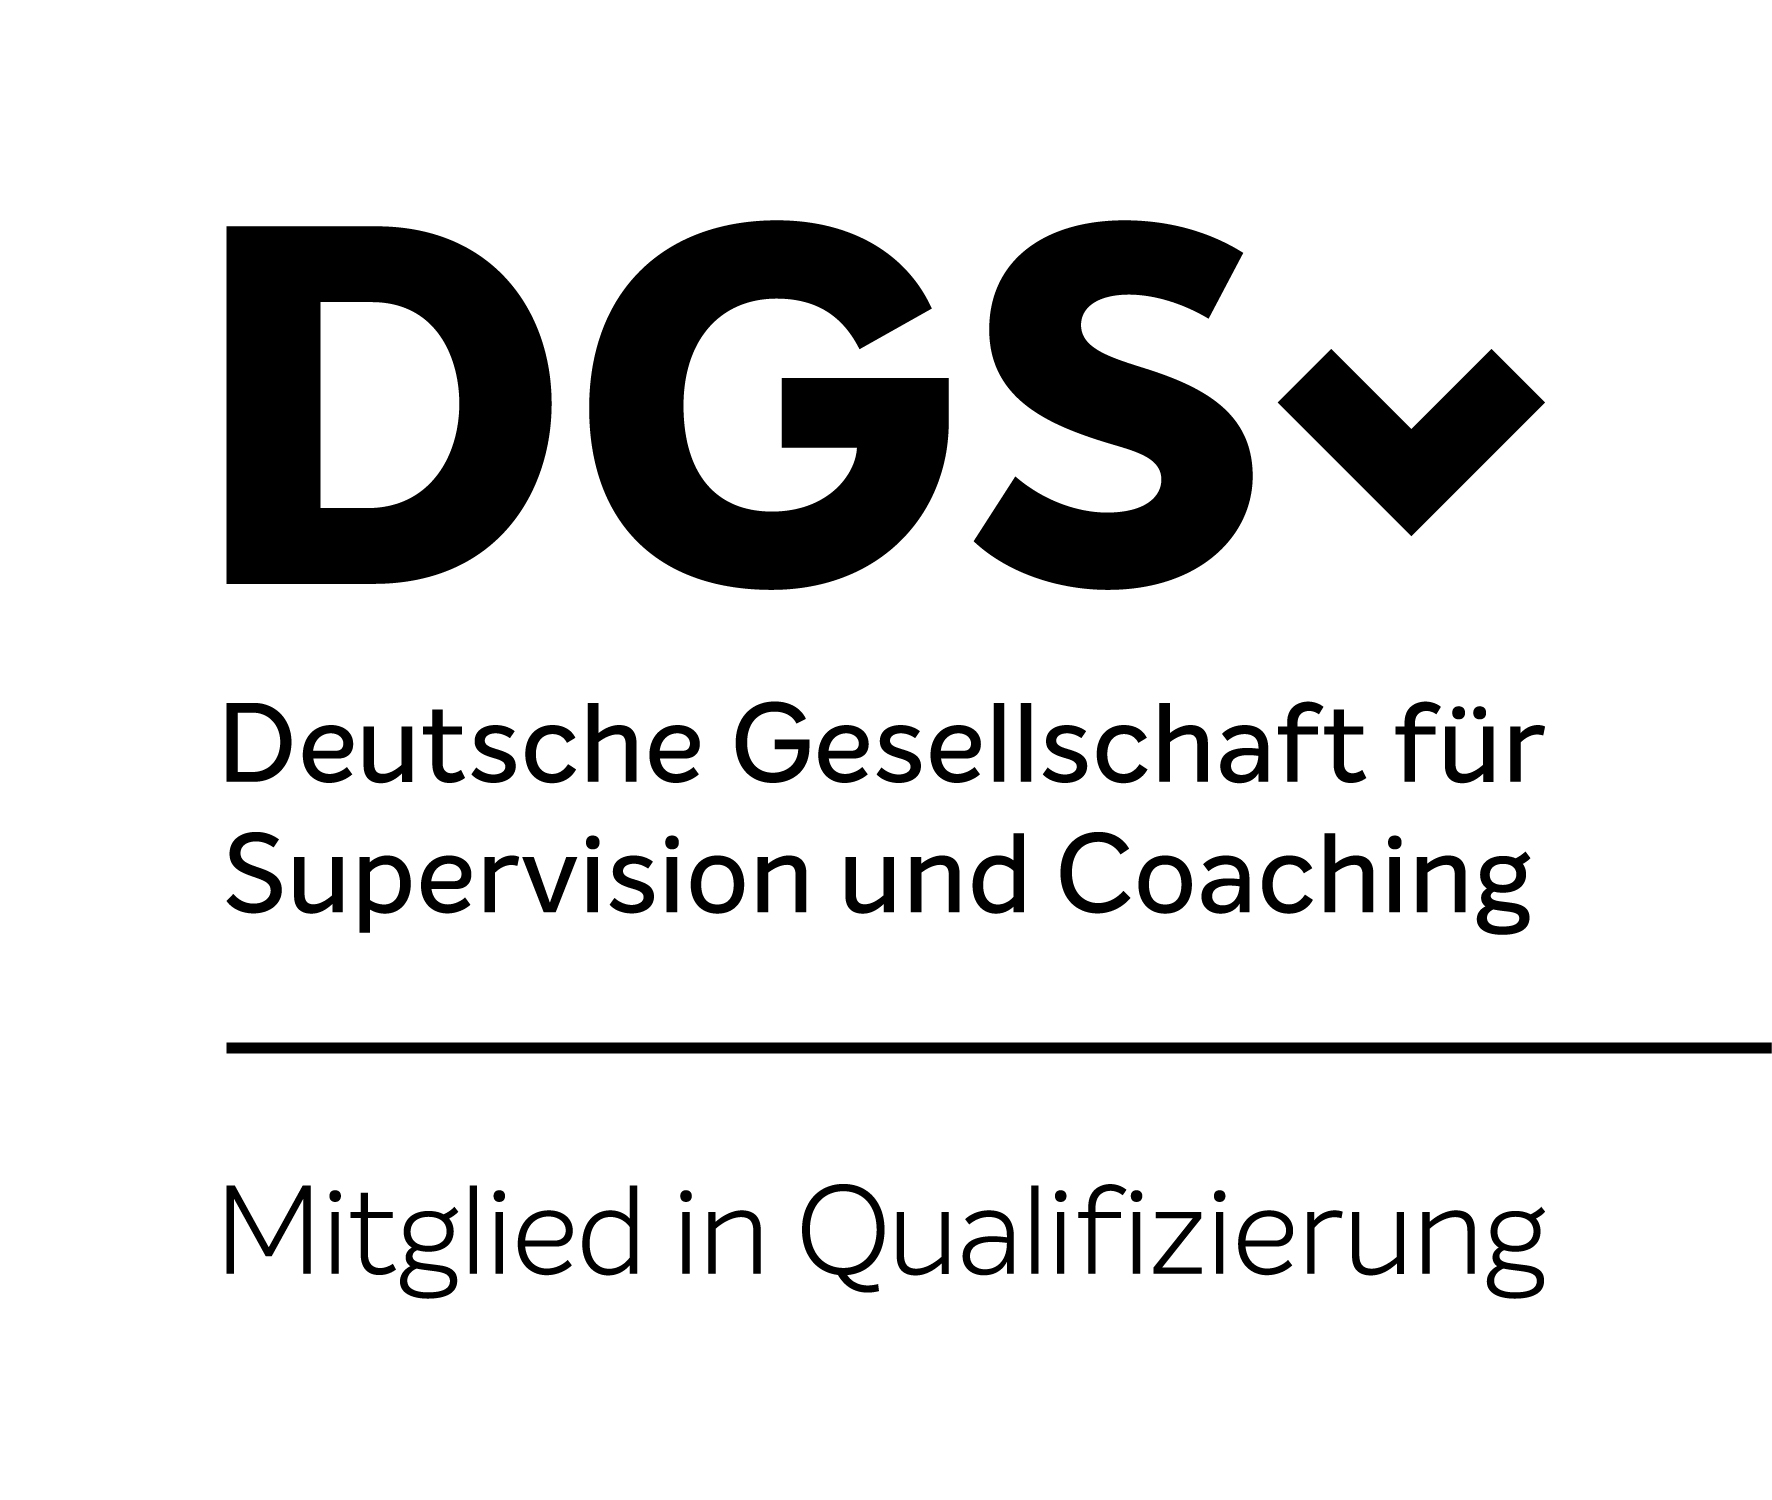 DGSv
Deutsche Geselschaft für Supervision und Coaching - Mitglied in Qualifizierung